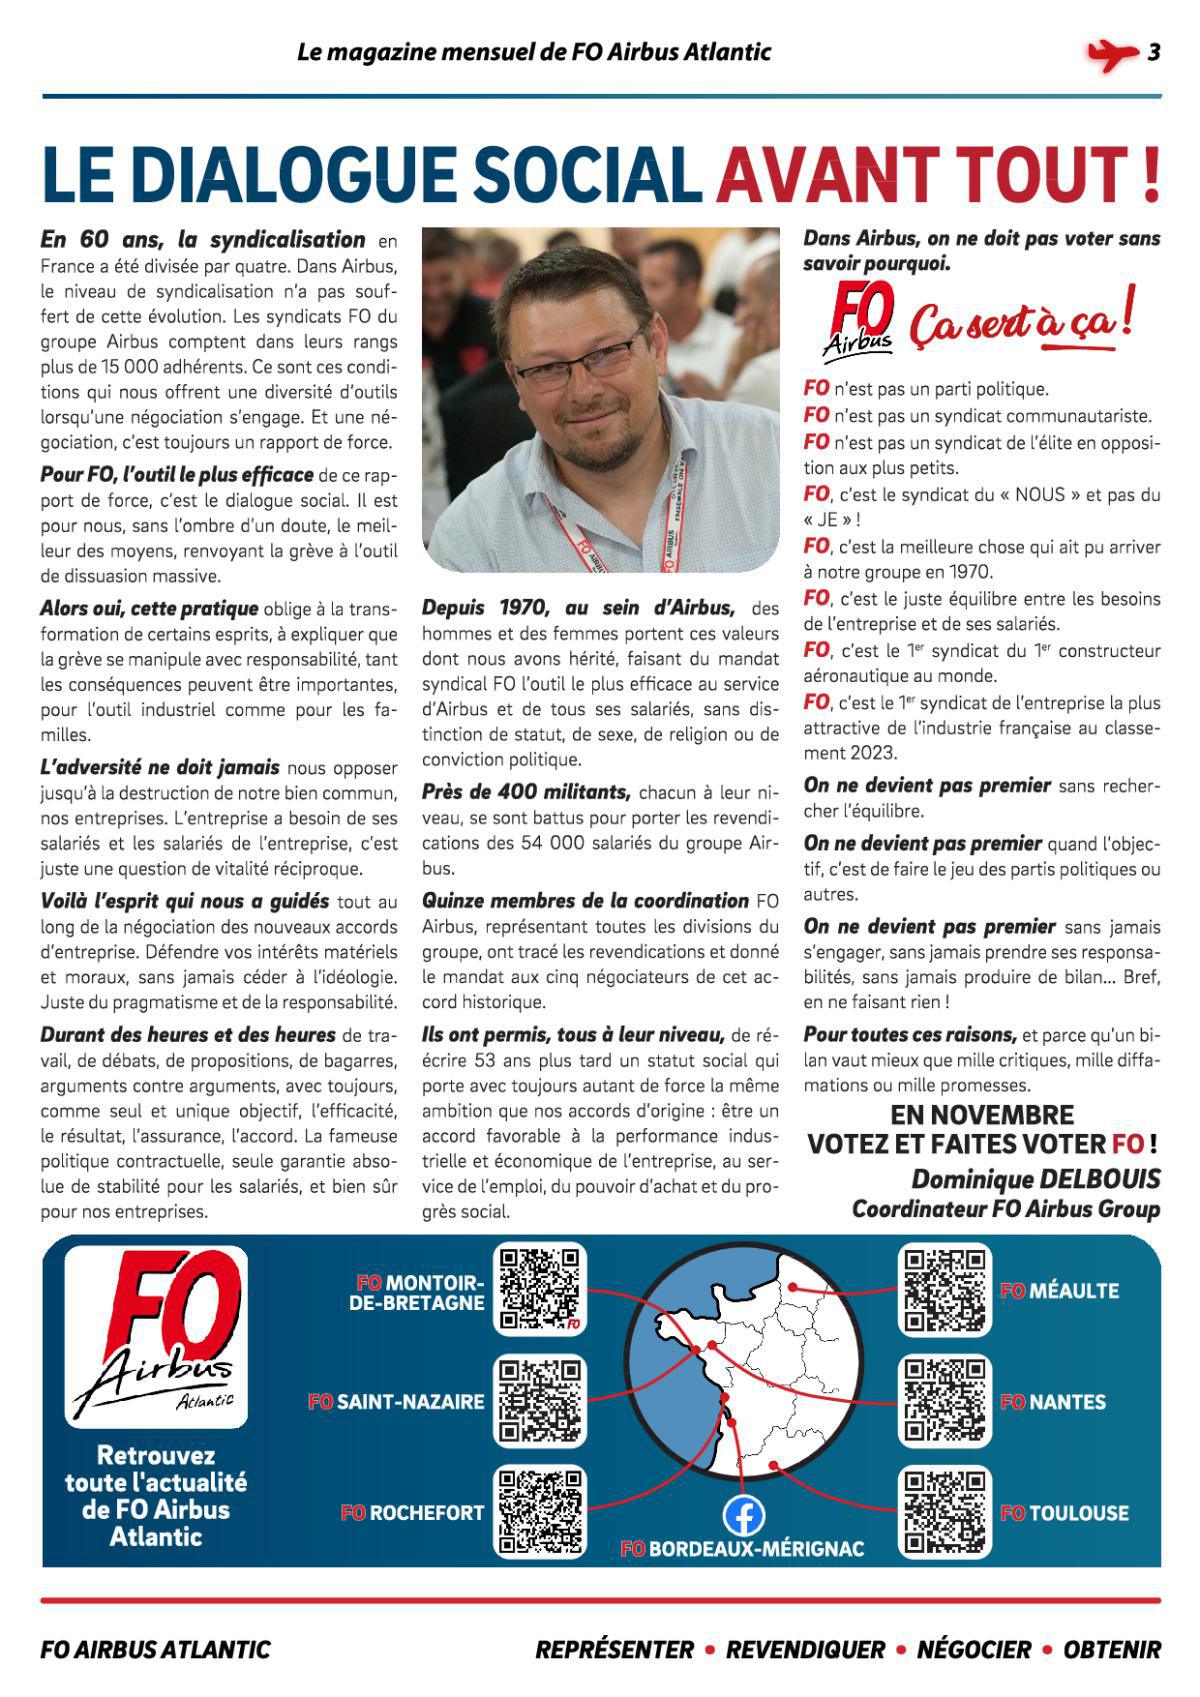 Le magazine InFO mensuel n°3 - Novembre